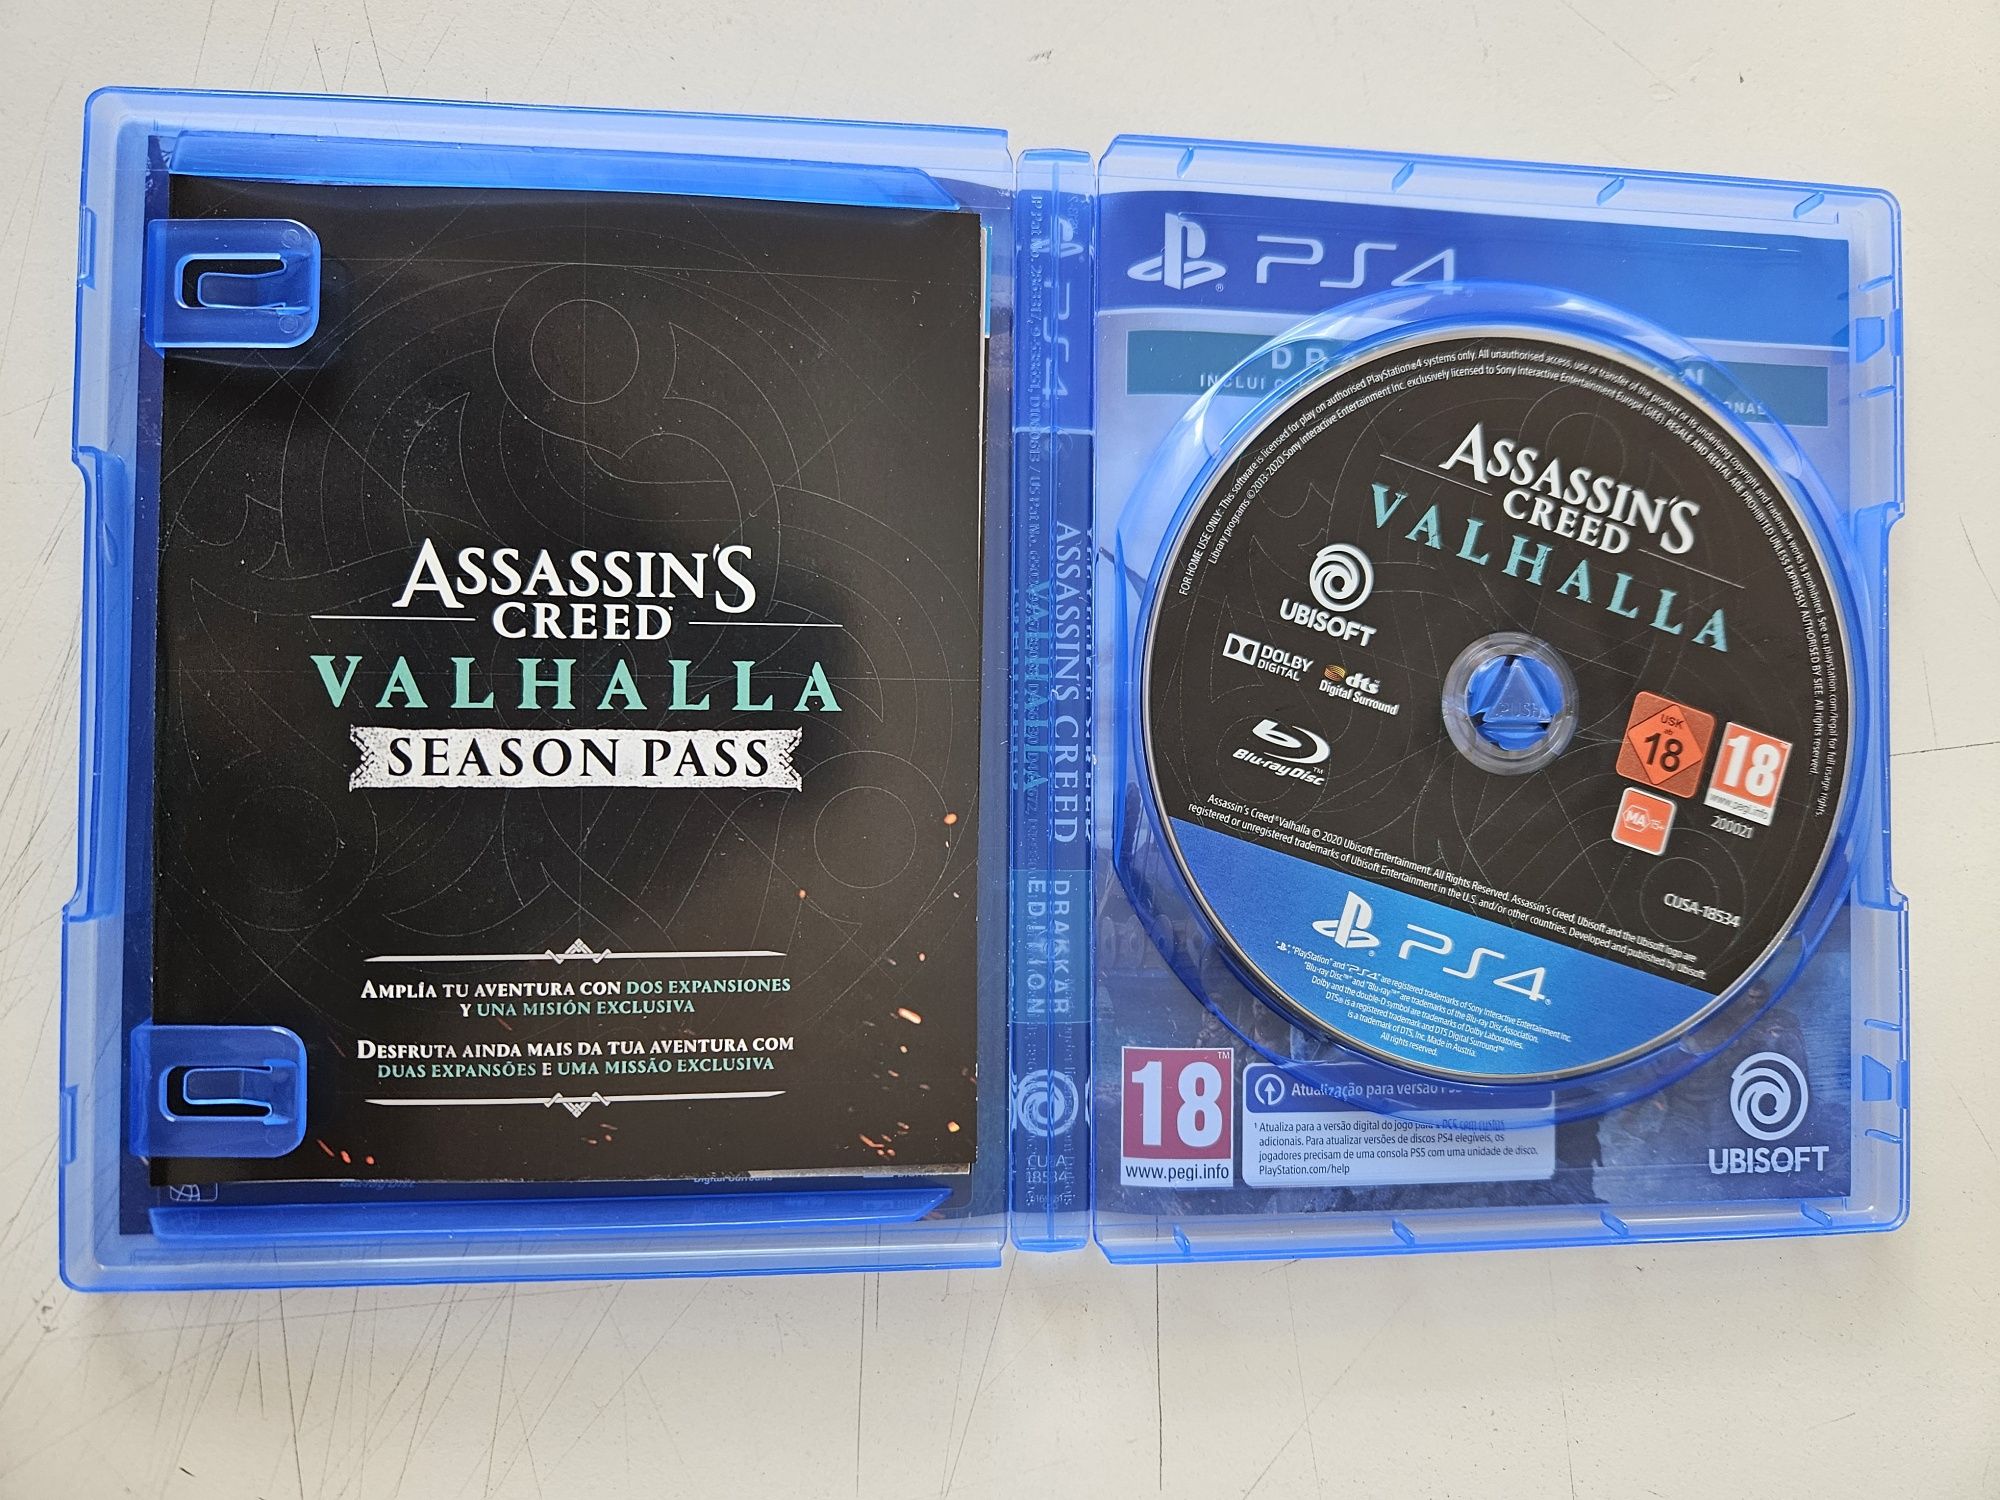 Assassin's Creed Valhalla (drakkar edition) para PS4